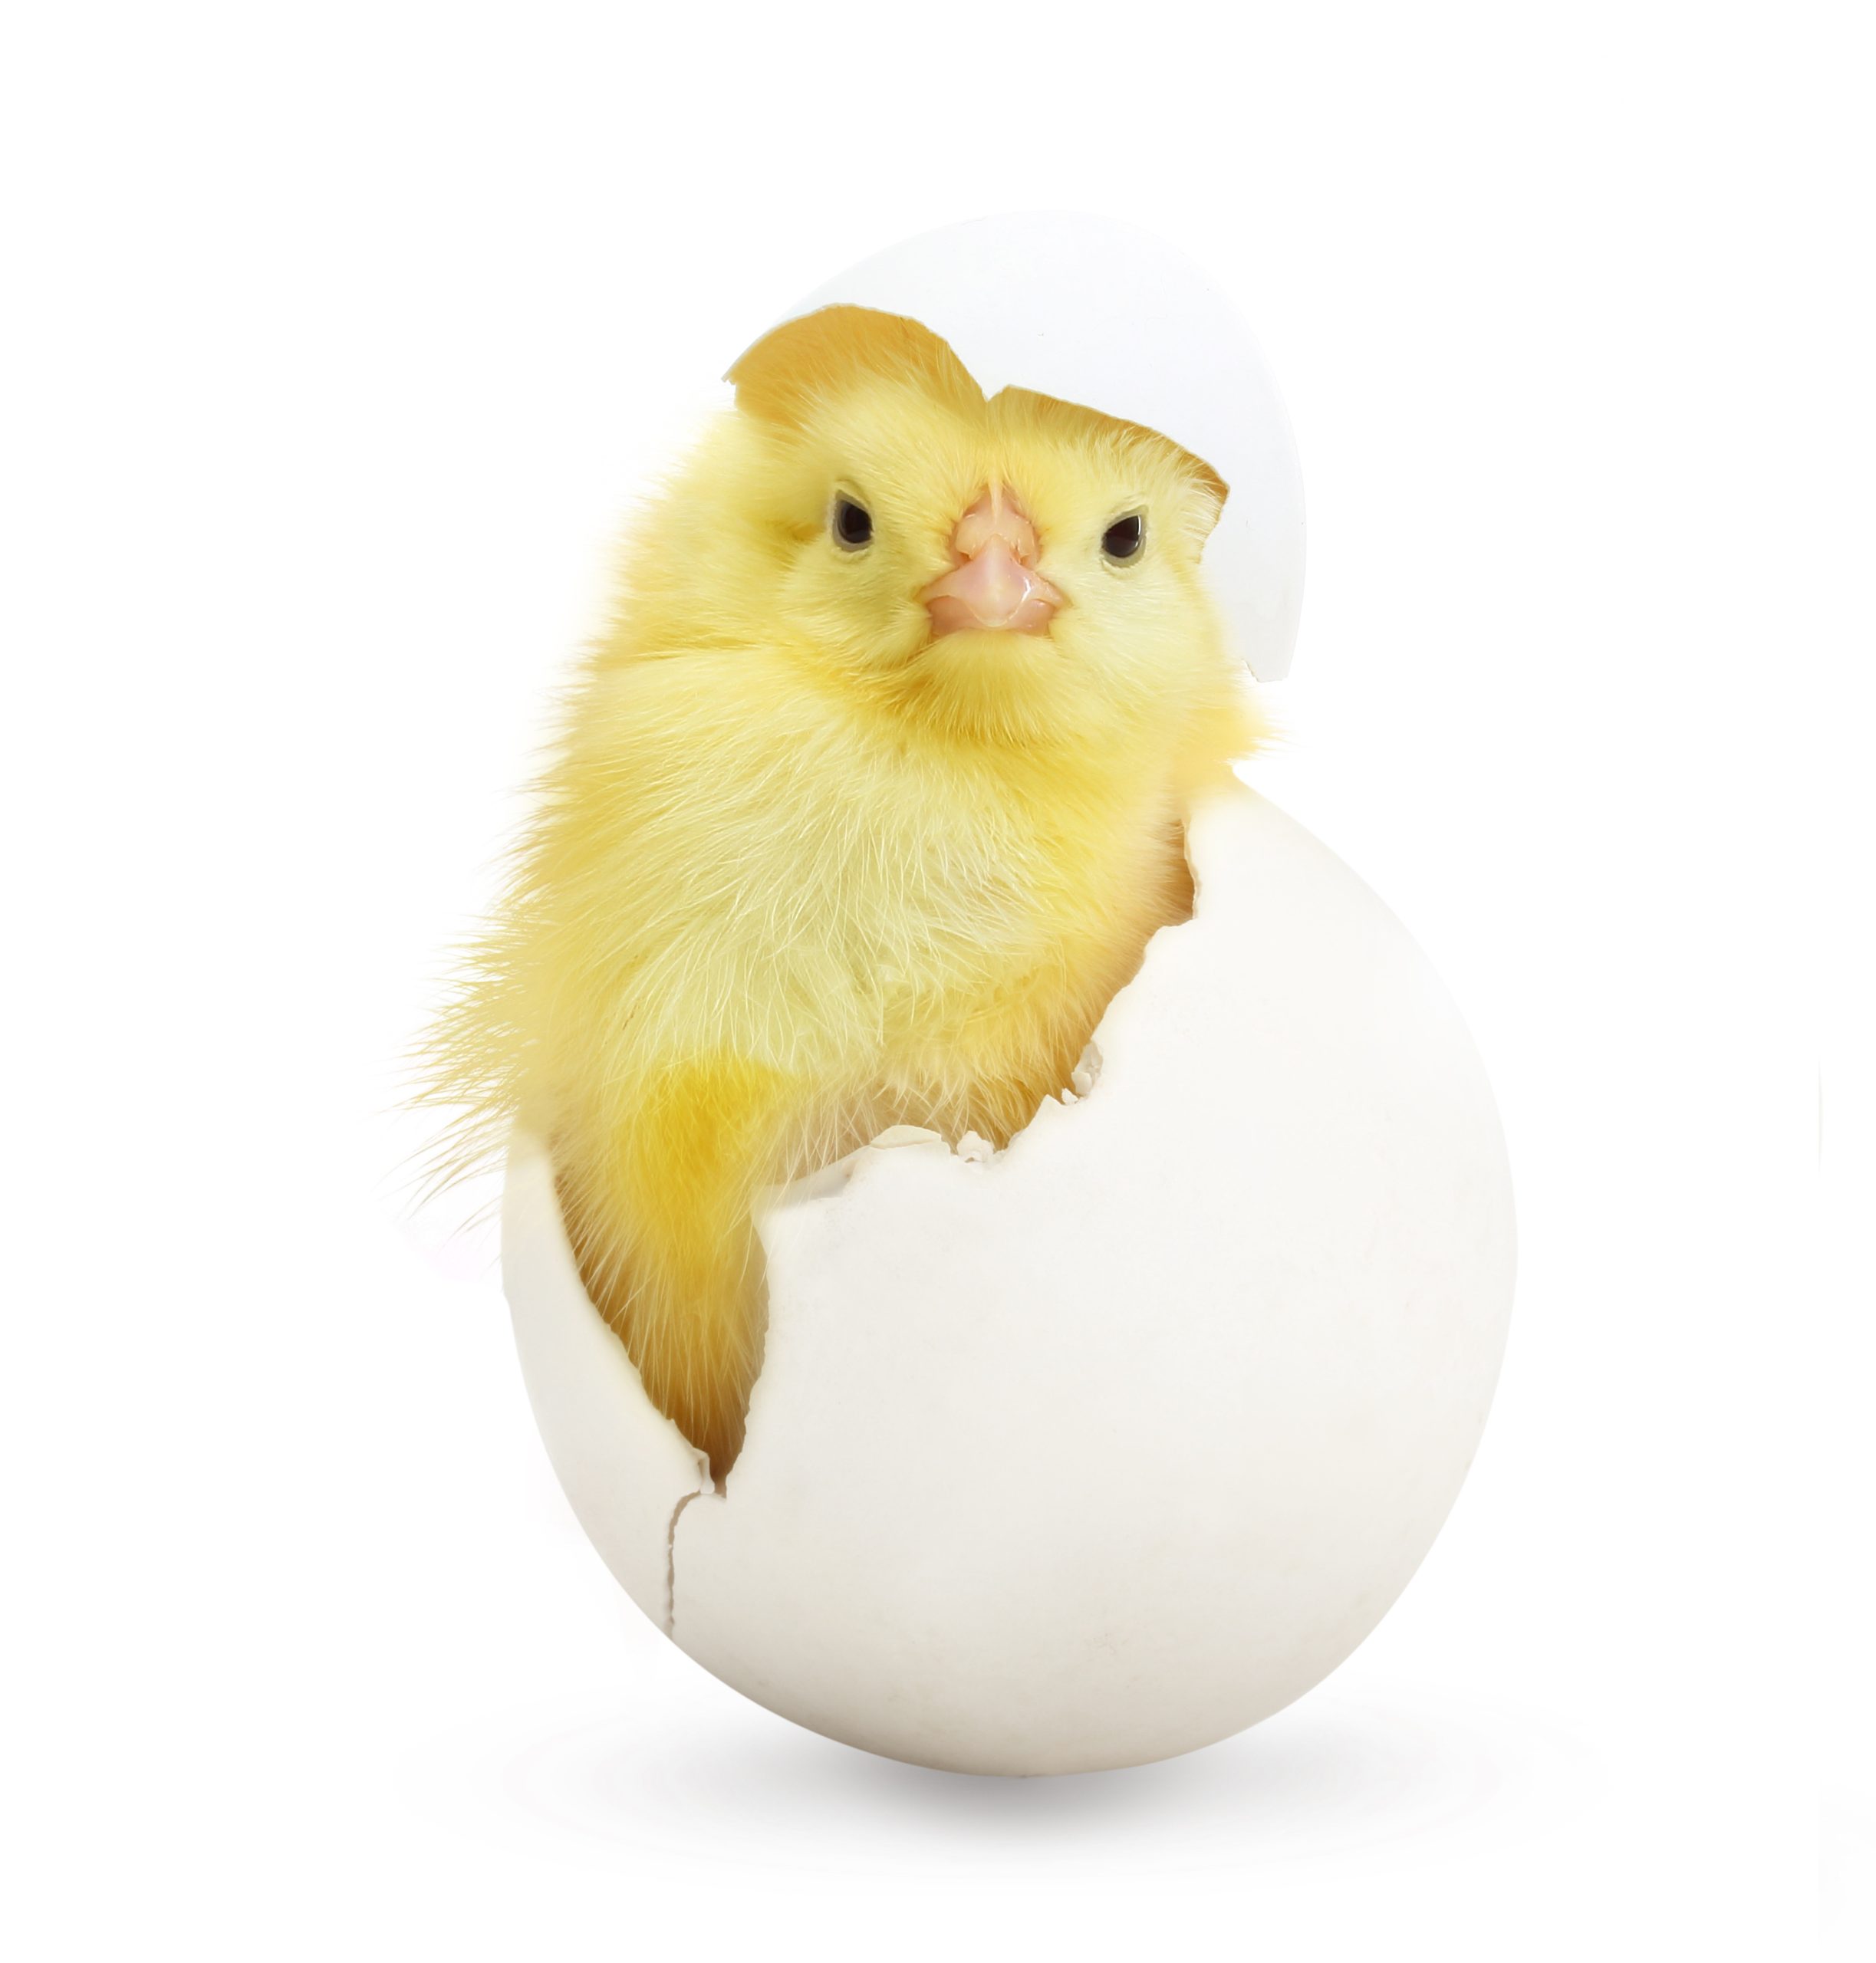 Manejo del huevo antes de la incubación